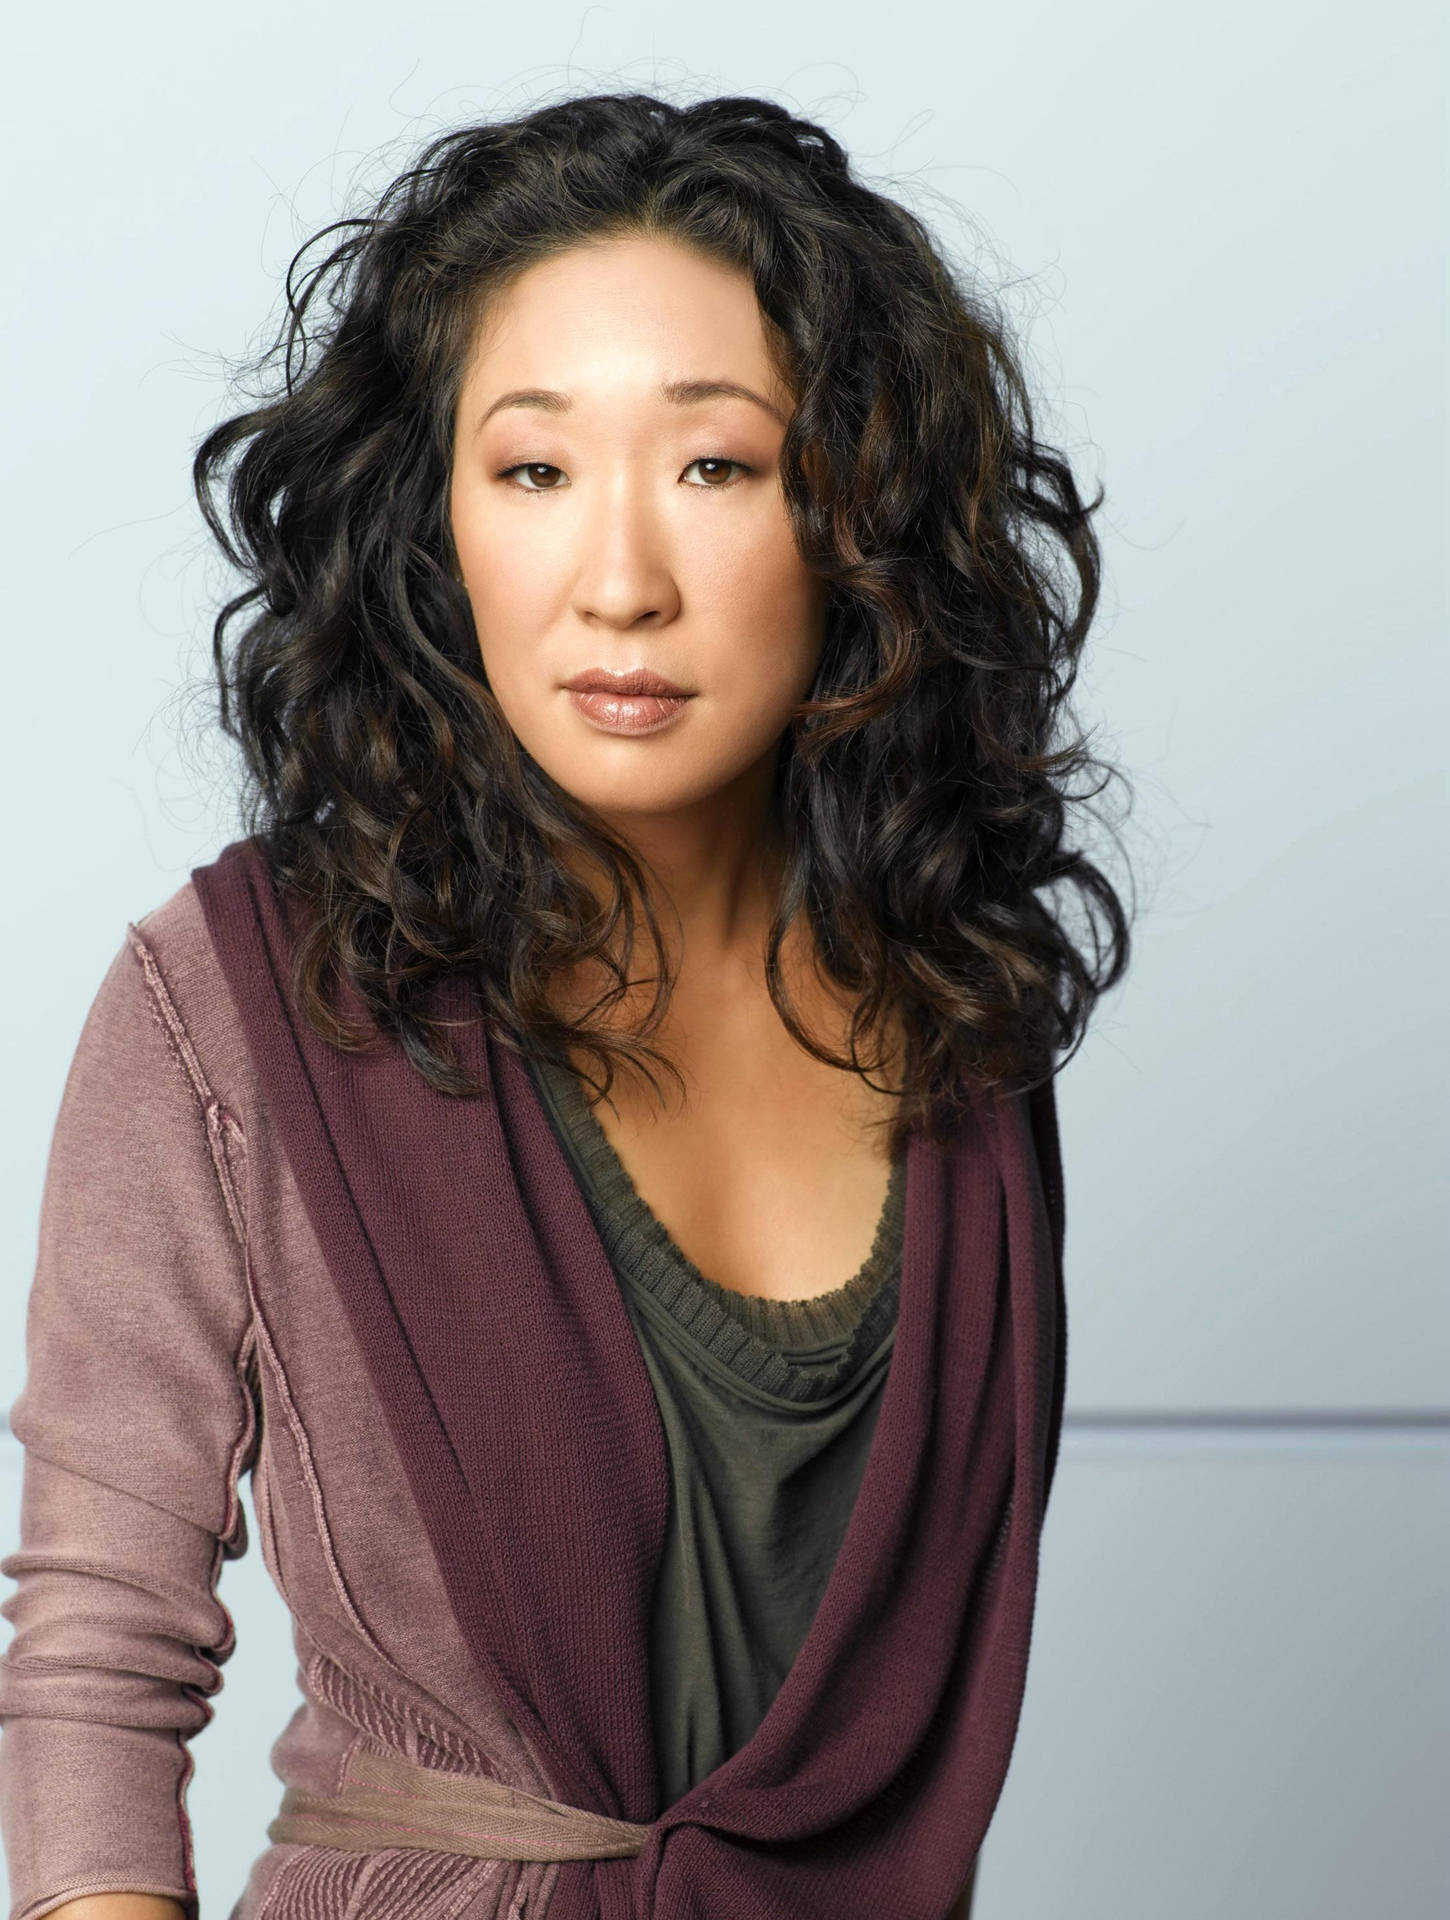 Sandraoh Als Cristina Yang Für Die Fernsehserie Grey's Anatomy Wallpaper